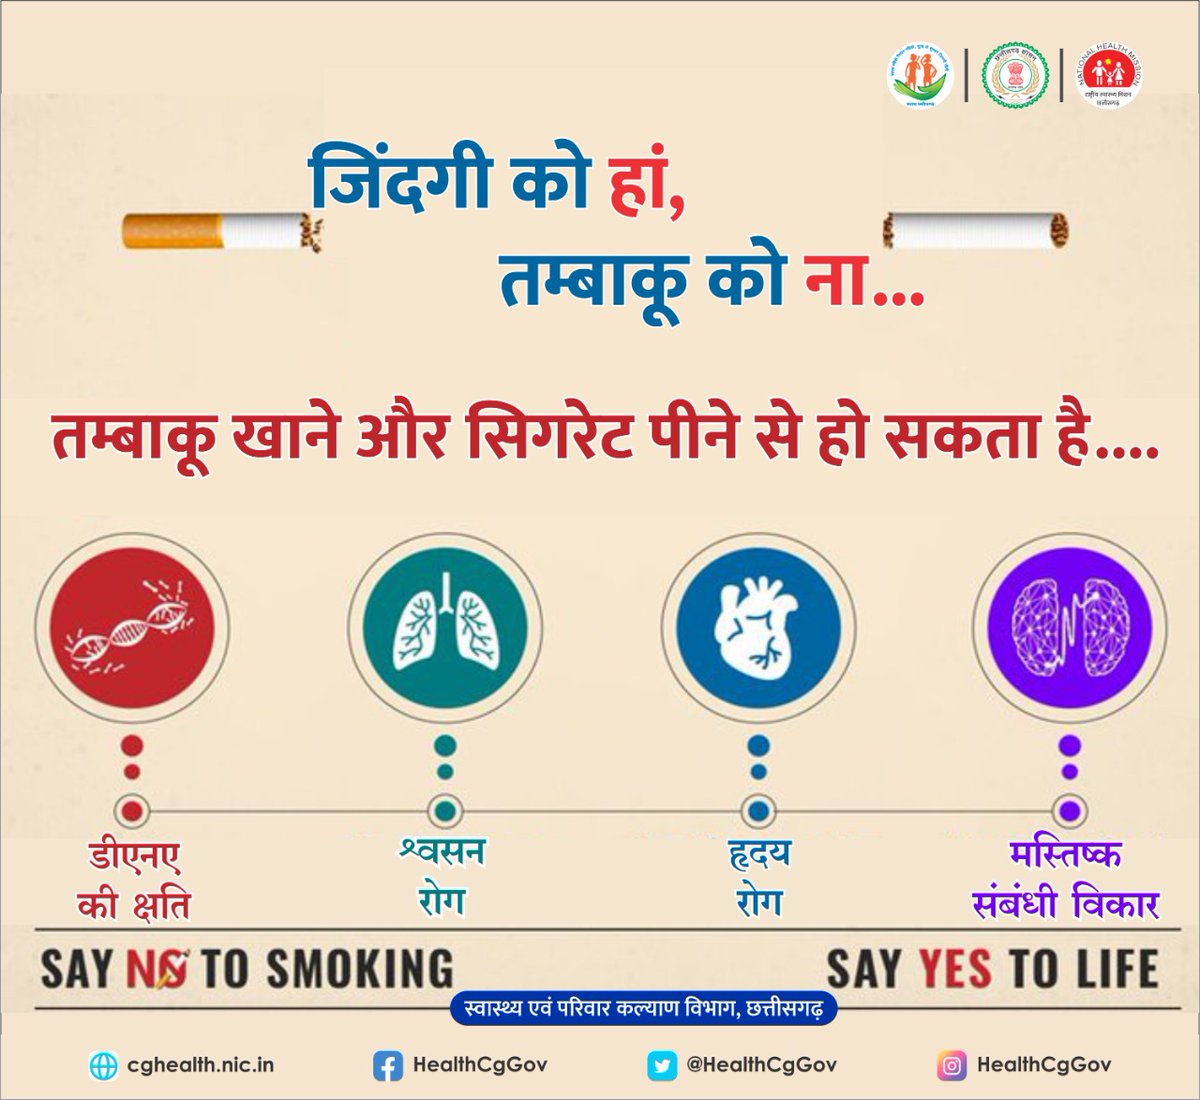 तंबाकू का हर रूप स्वास्थ्य के लिए घातक है। इसका किसी भी रूप में सेवन न करें।
#SayNoToTobacco
#NoTobacco #QuitTobacco
#SwasthaCG
@TS_SinghDeo @ChhattisgarhCMO